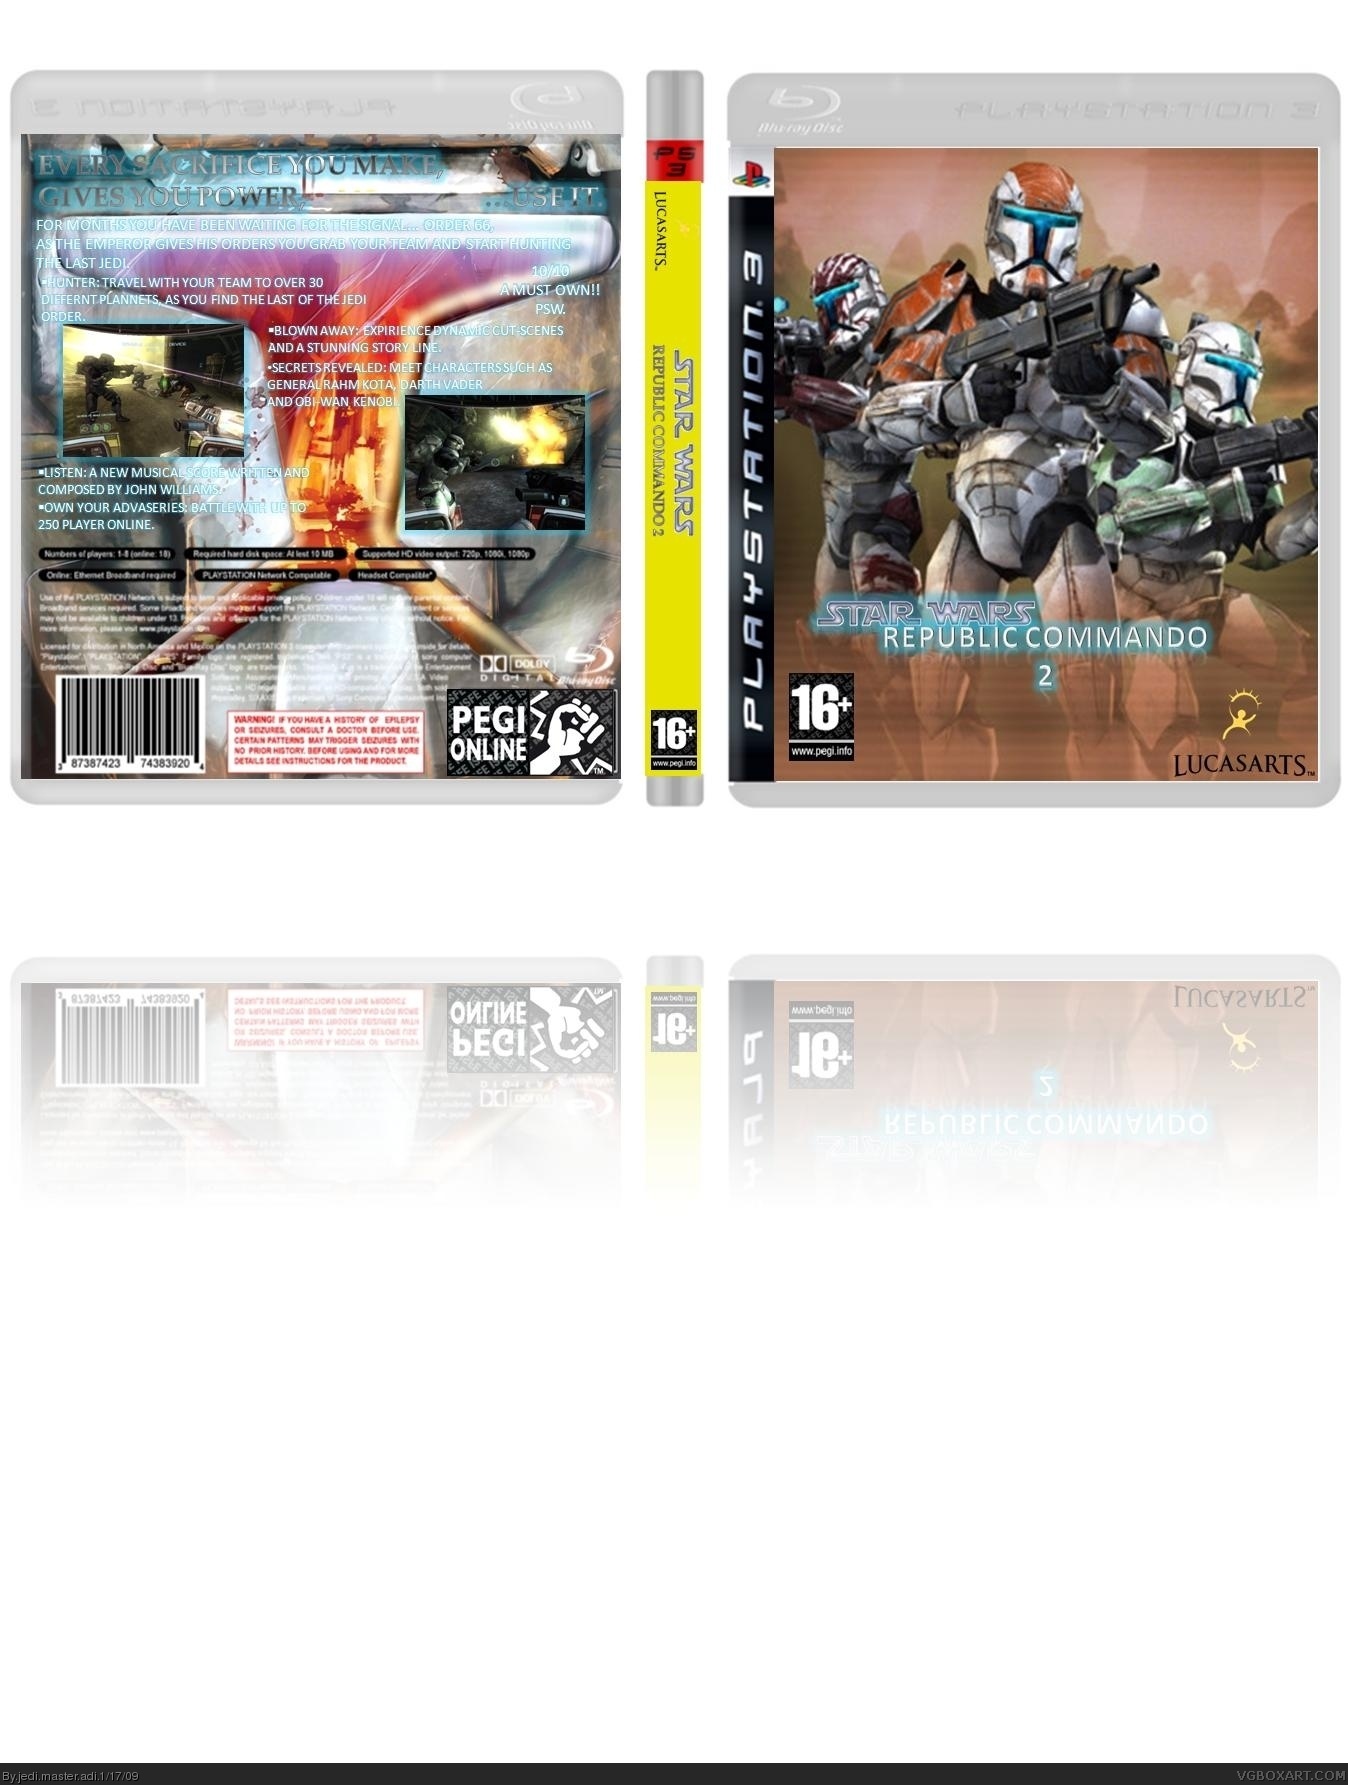 Star Wars: Republic Commando 2 box cover